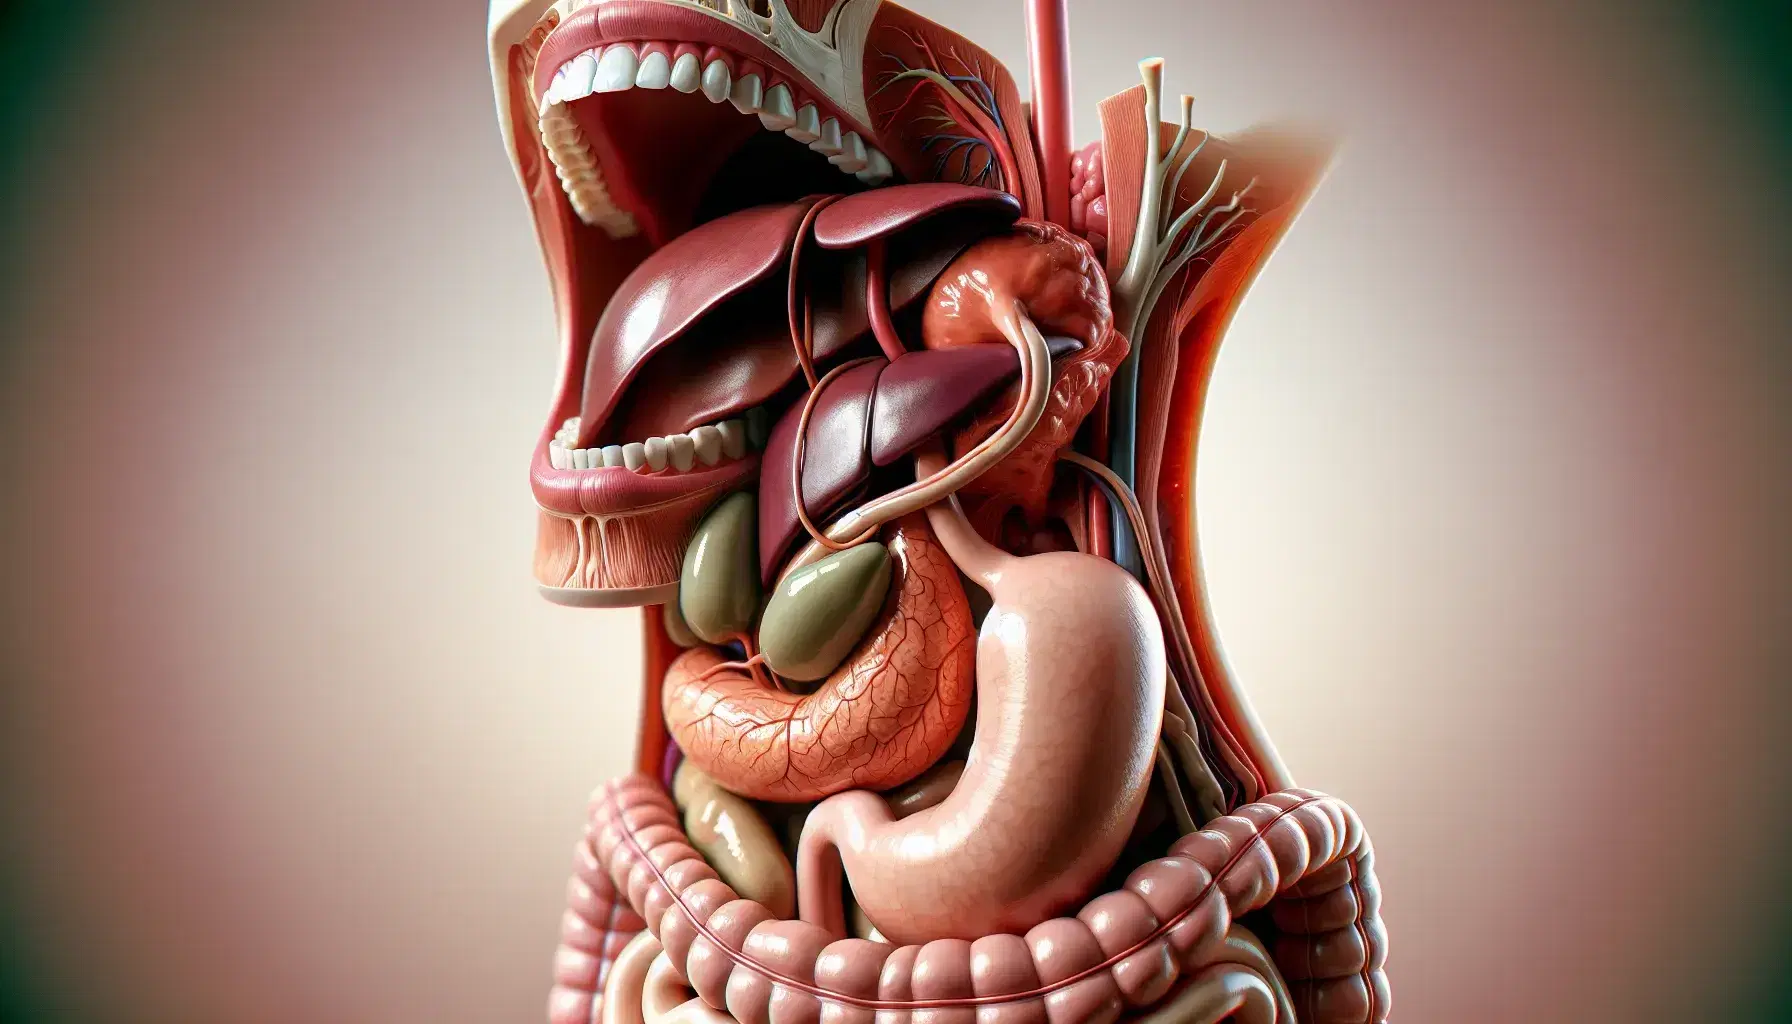 Modelo anatómico tridimensional y colorido del sistema digestivo humano, mostrando boca, dientes, lengua, esófago, estómago, hígado, vesícula biliar, páncreas e intestinos.